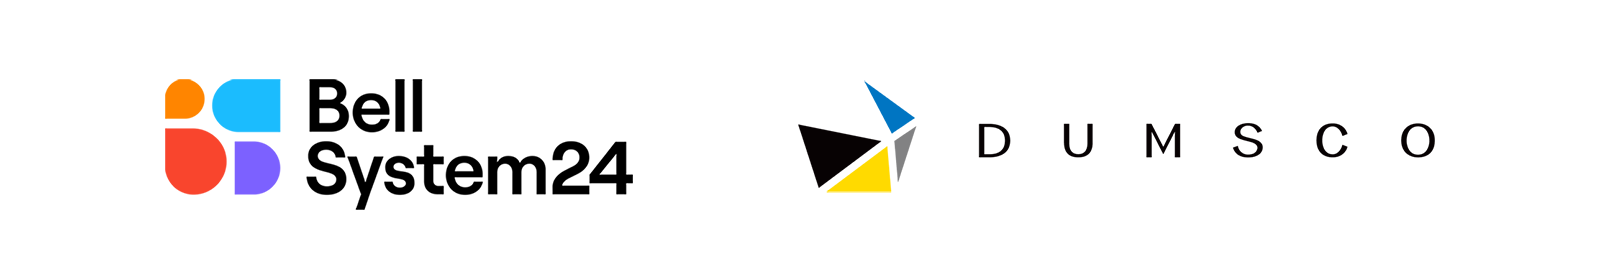 ベルシステム24/DUMSCO ロゴ